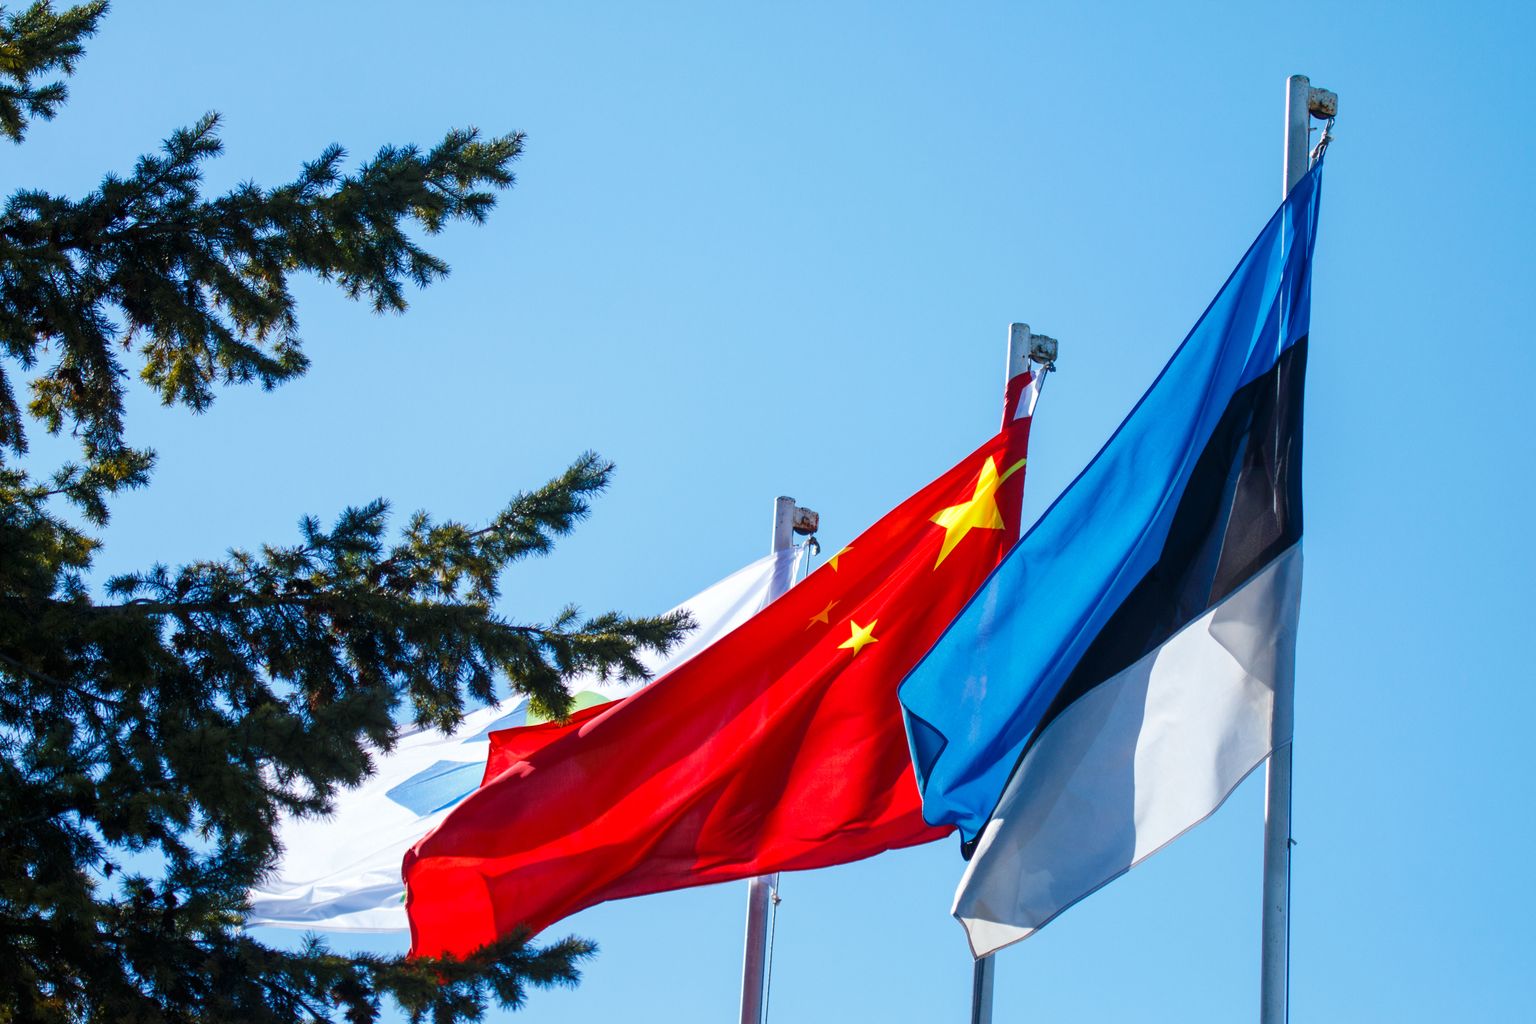 Eesti saatis välja Hiina diplomaadi, millele Hiina vastas samaga.